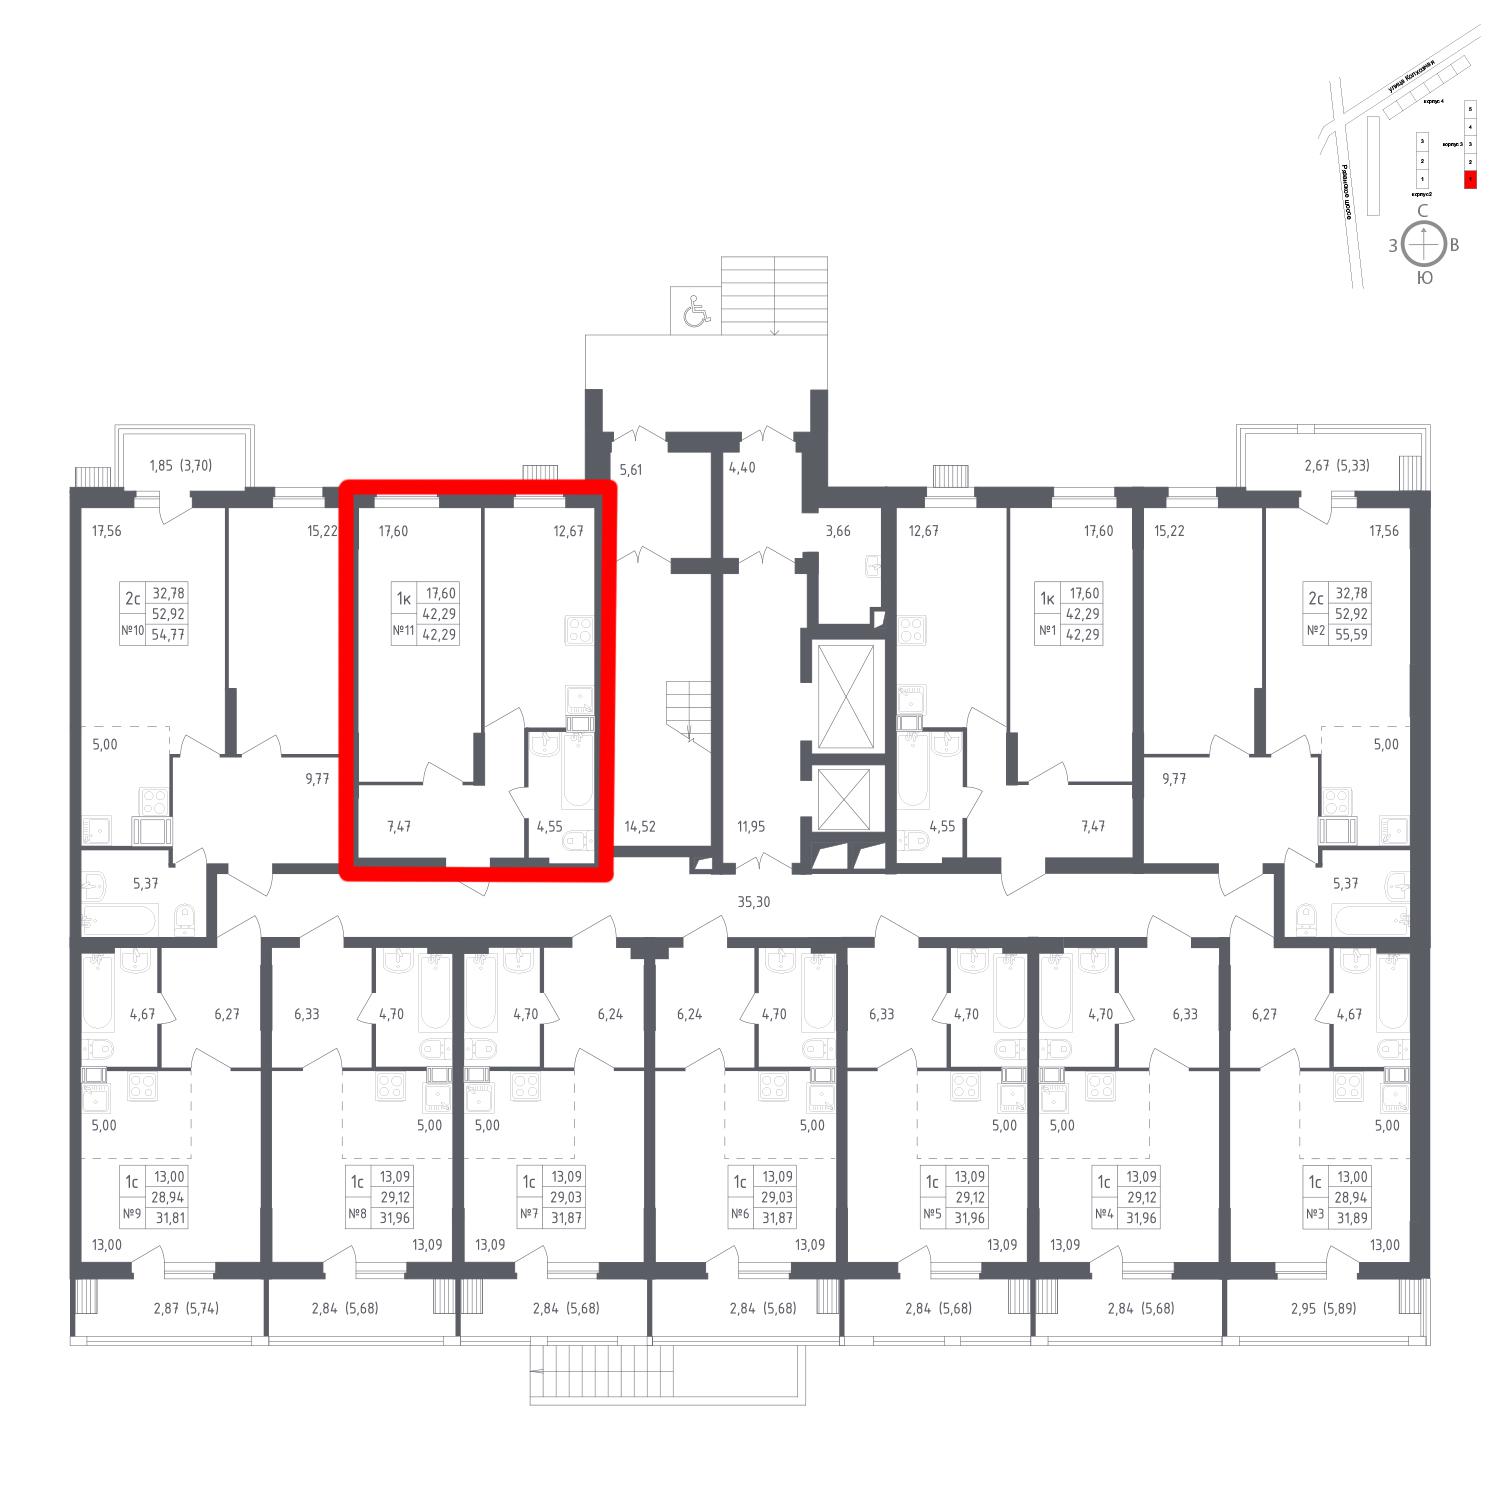 Продаётся 1-комнатная квартира в новостройке 42.3 кв.м. этаж 1/12 за 5 724 736 руб 